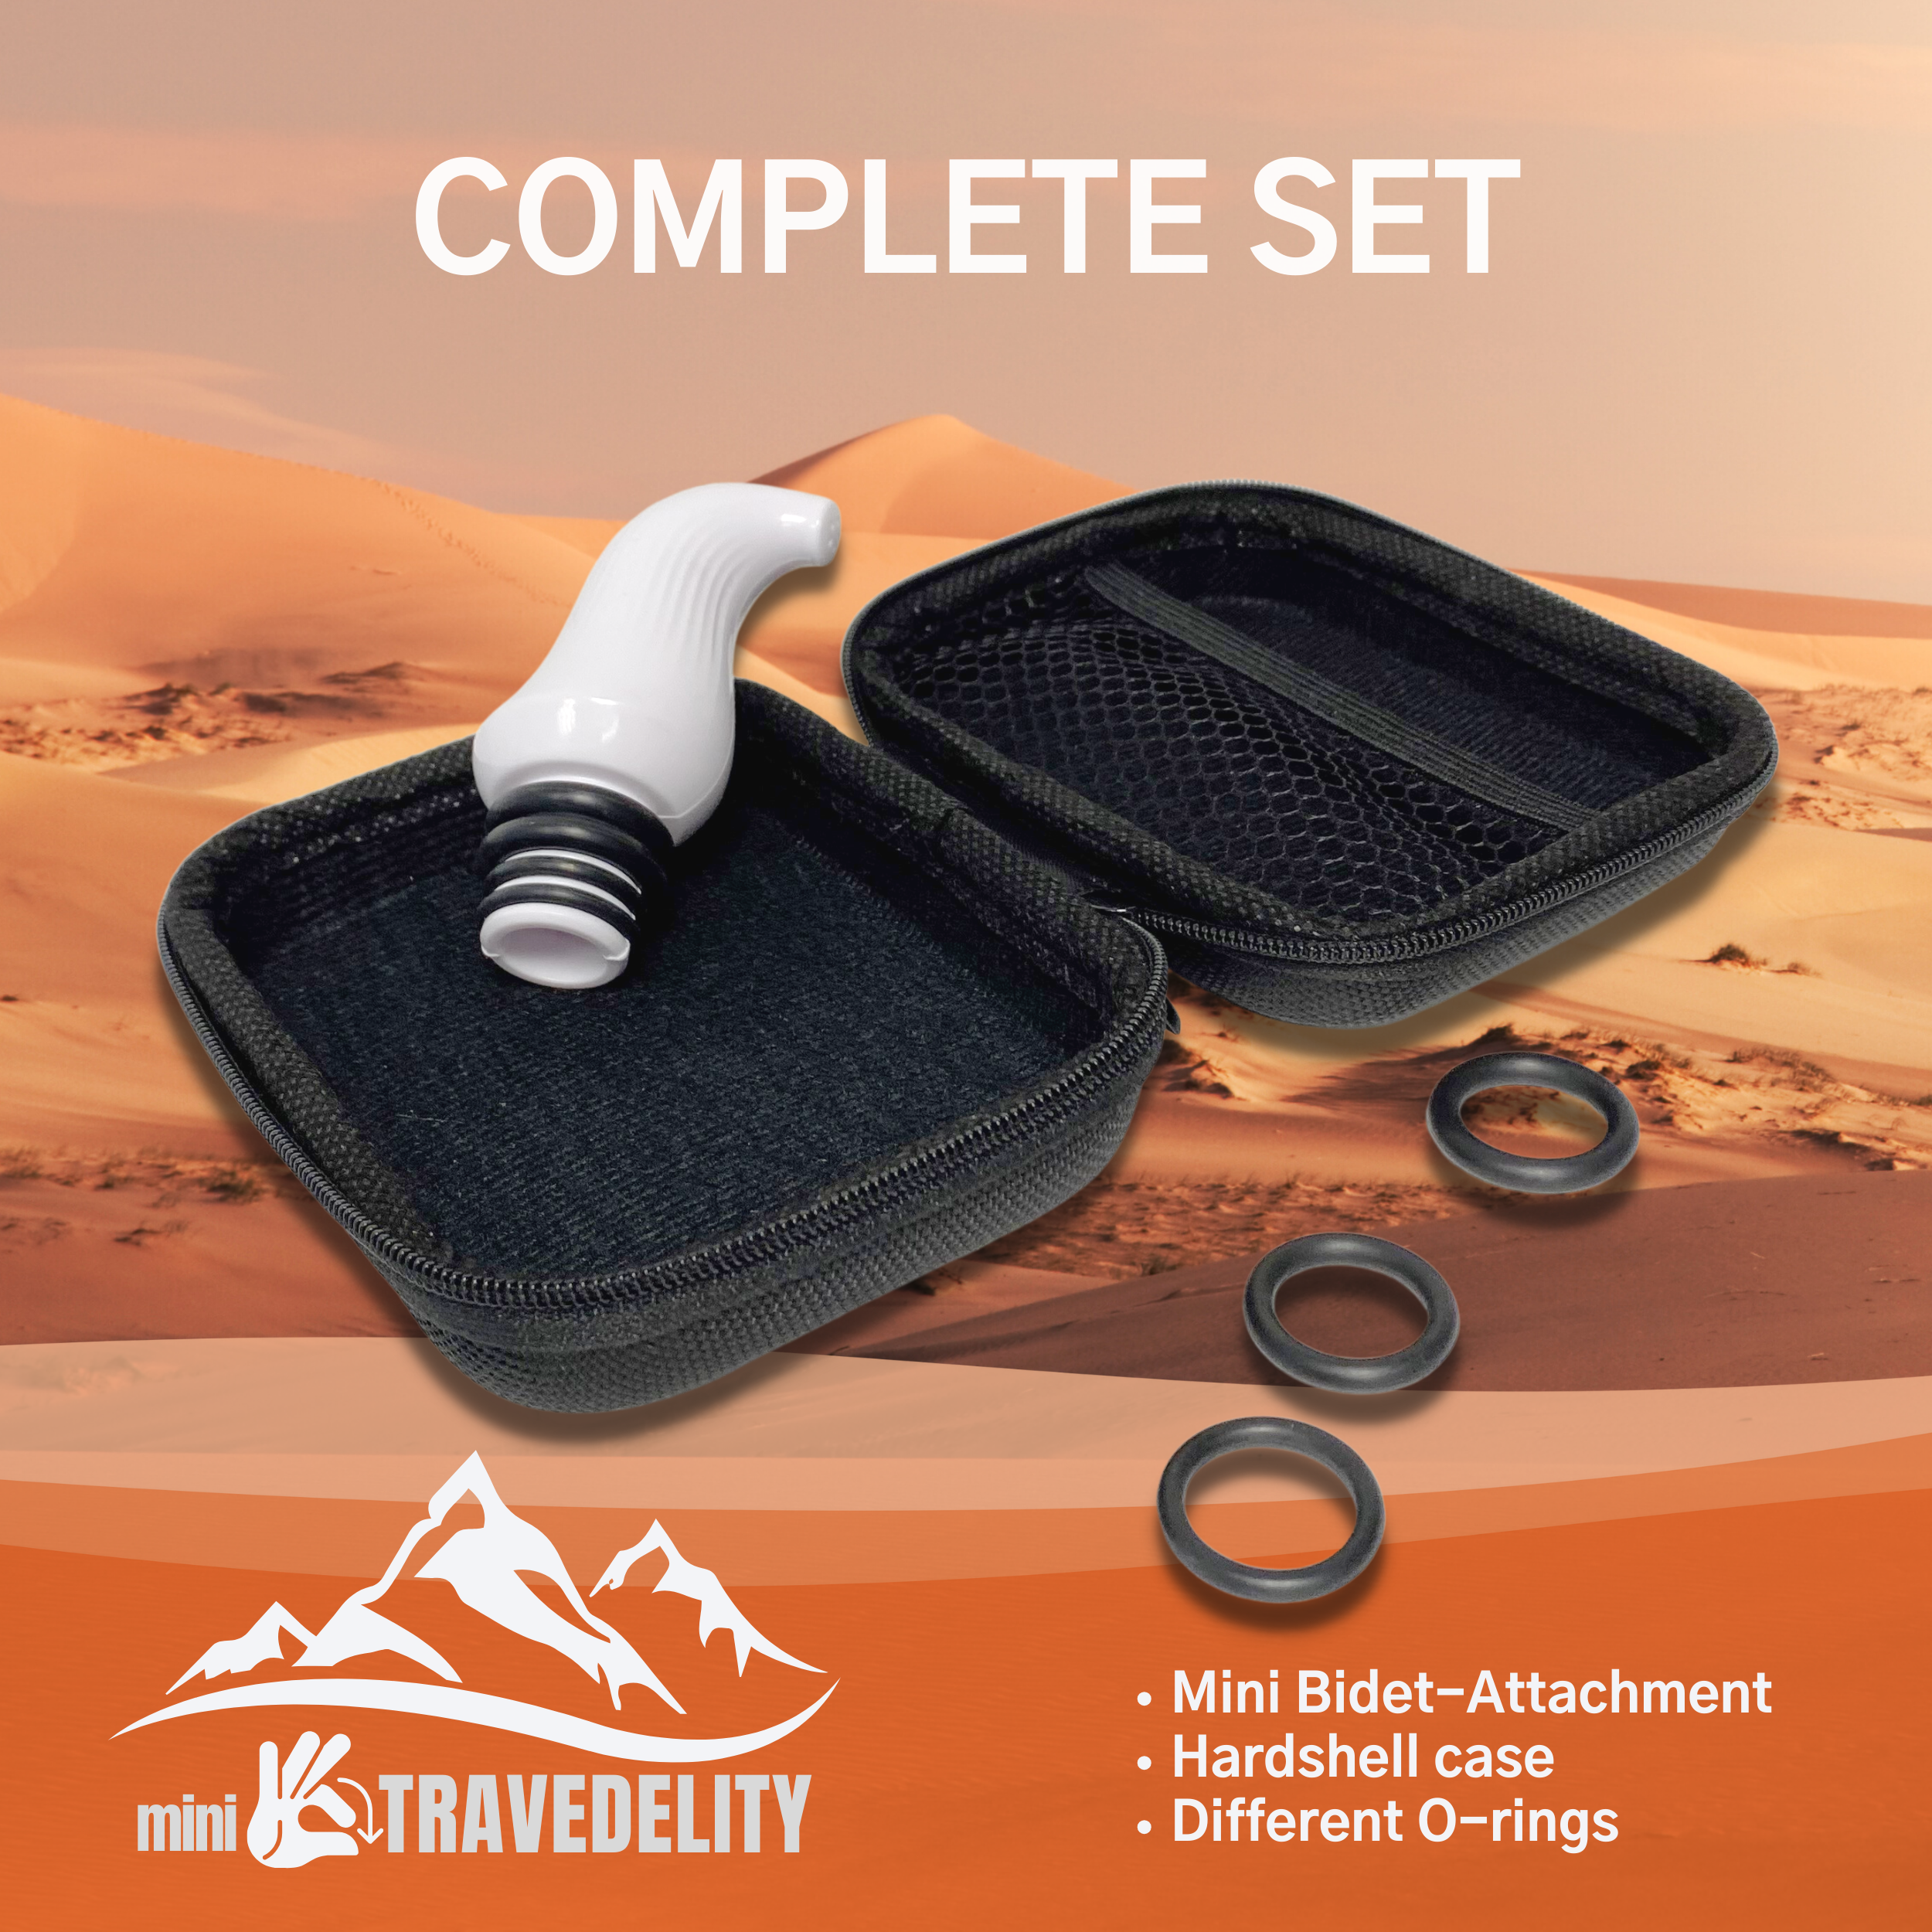 Mini-Travedelity, Portable Bidet Attachment with travel case